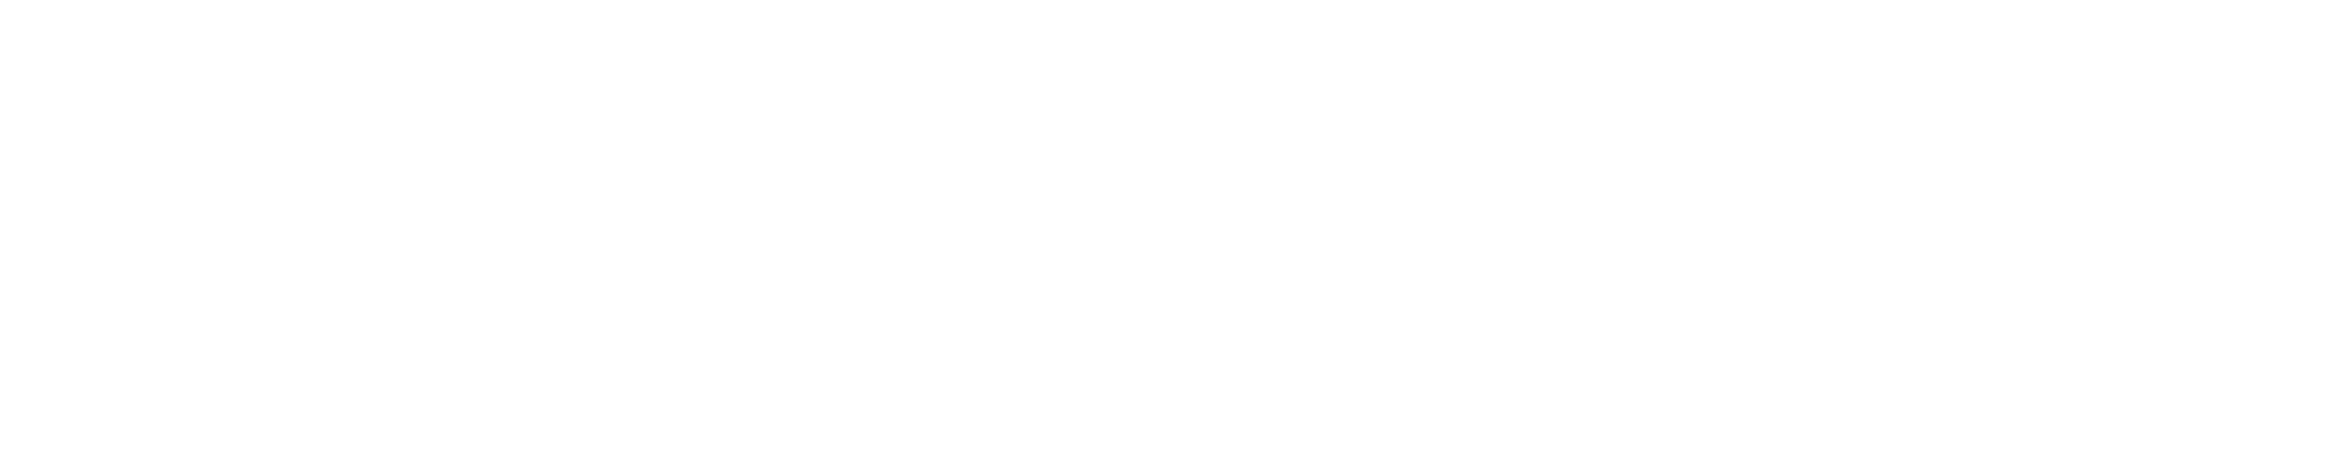 Logo Deputacion Coruna Blanco